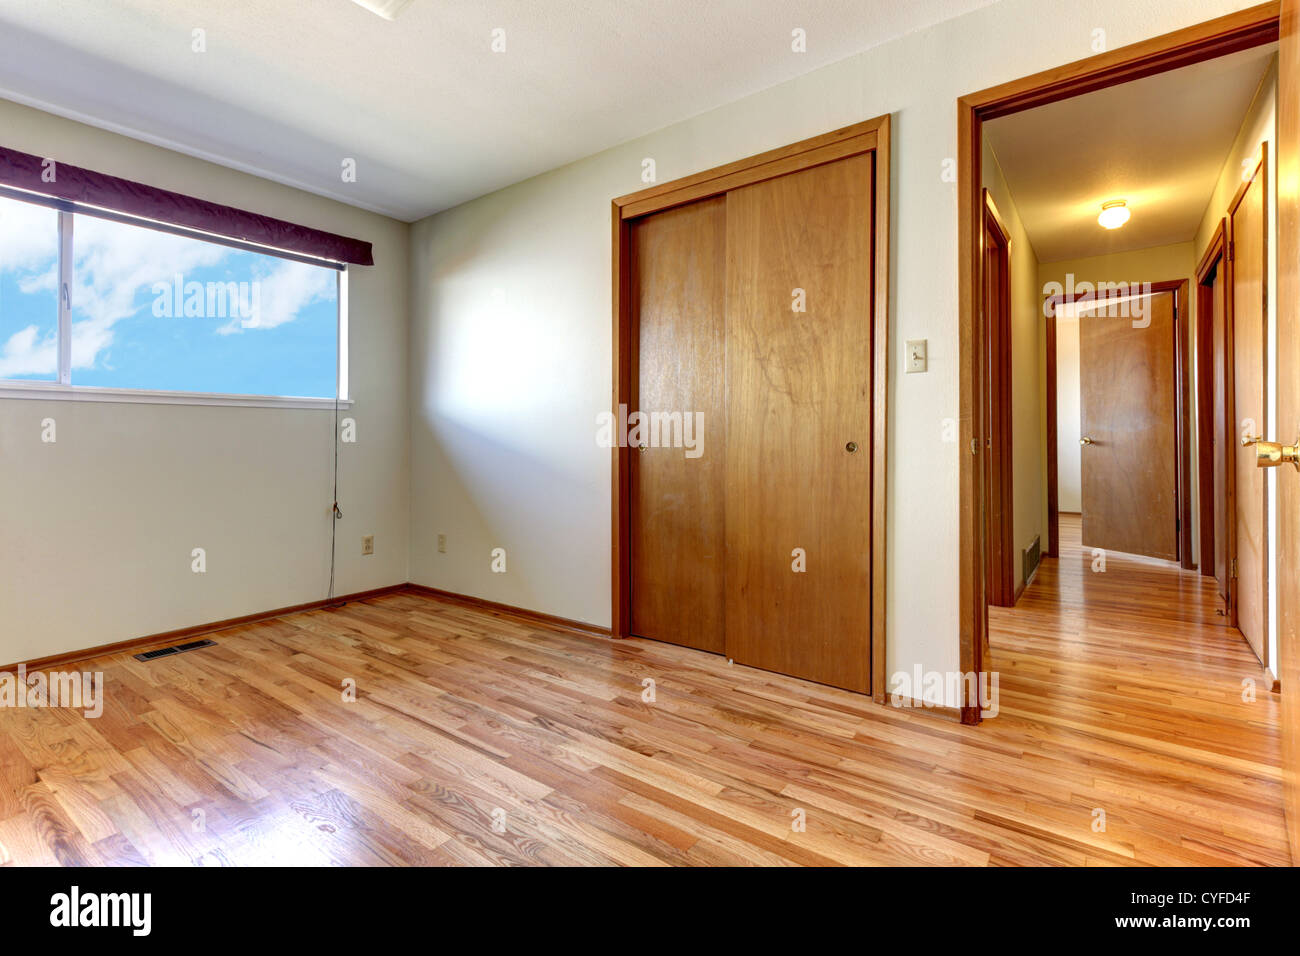 Empty Bedroom With Shiny Hardwood Floor And Open Door To Hallway